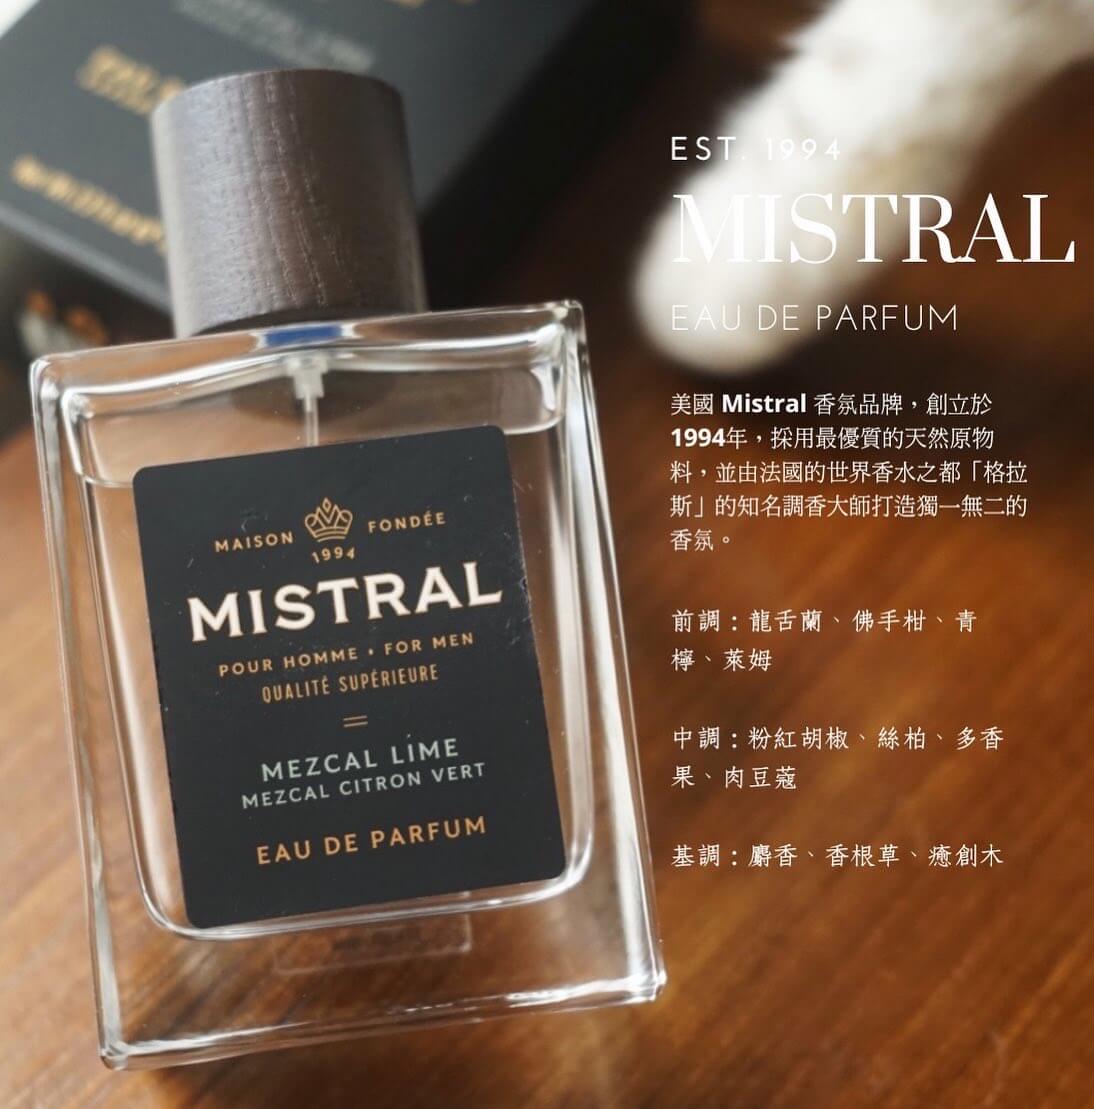 Mistral Mezcal Lime Eau De Parfum Tequila Lime Men's Perfume